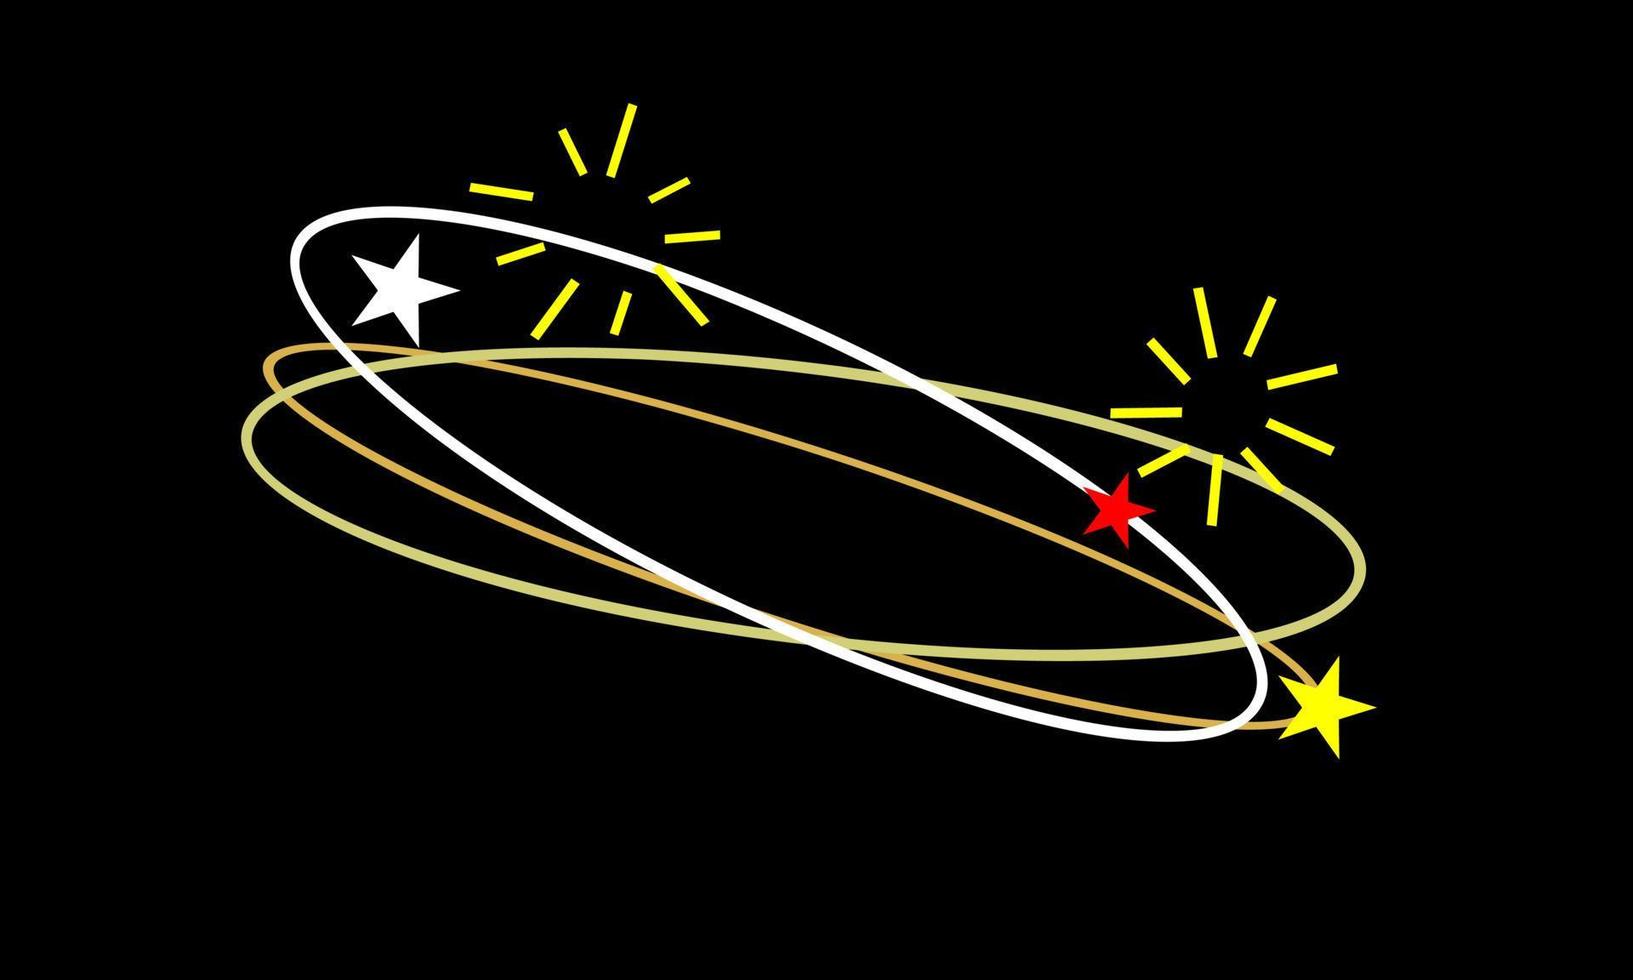 schwindliger Ausdruck. fliegende sterne mit orbitspuren weiß, rot, gelb auf schwarzem hintergrund. vektor